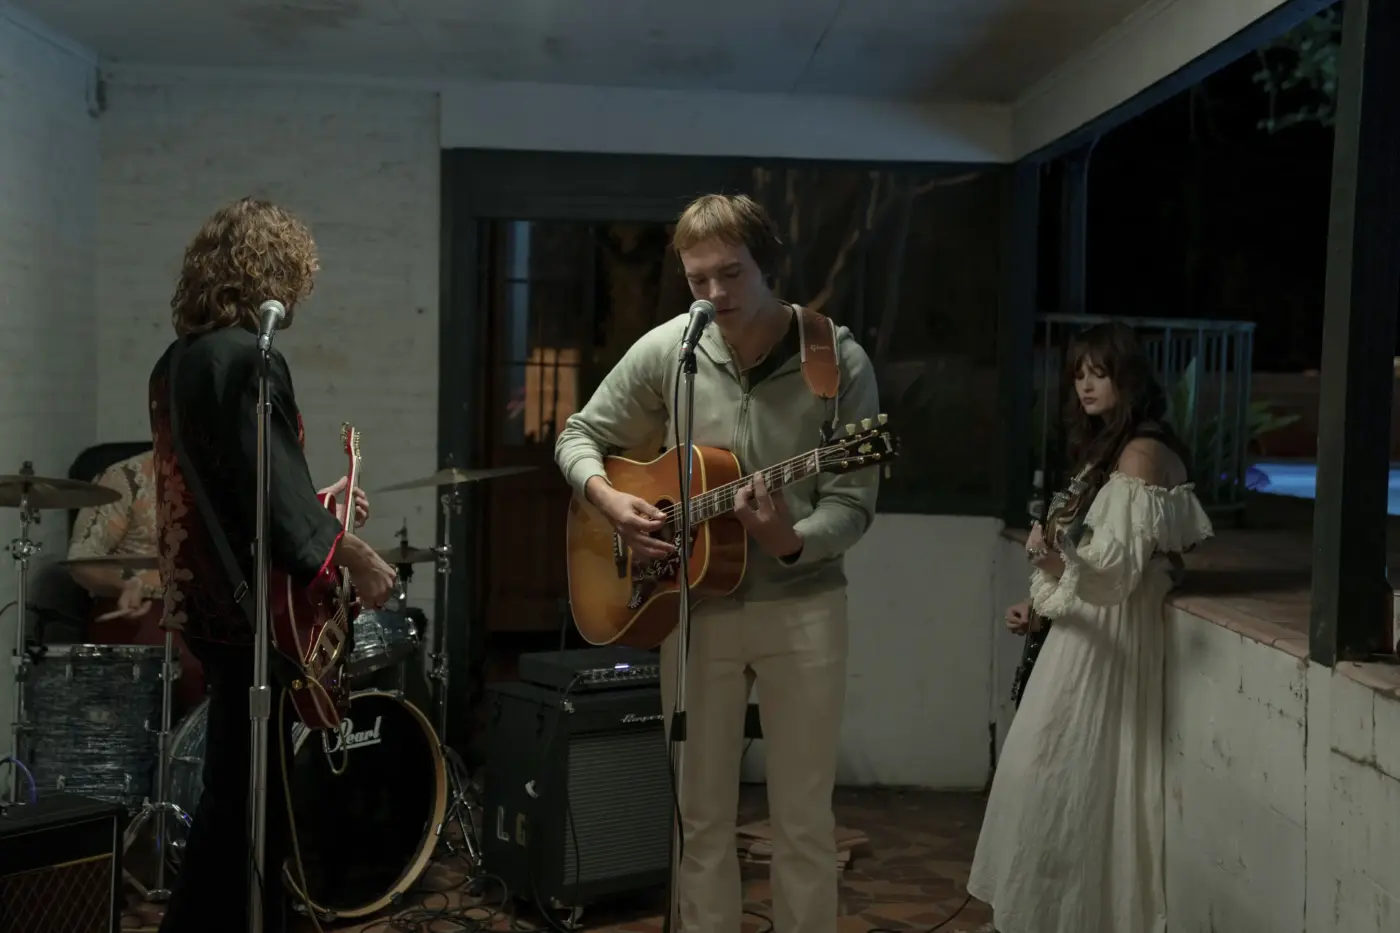 Eine Band spielt in einem häuslichen Vorbau, es ist Nacht. Im Vordergrund stehen zwei Männer, die auf Gitarren spielen, links von ihnen steht eine junge Frau im weißen Kleid und mit Gitarre. Im Hintergrund sitzt ein Mann am Schlagzeug.